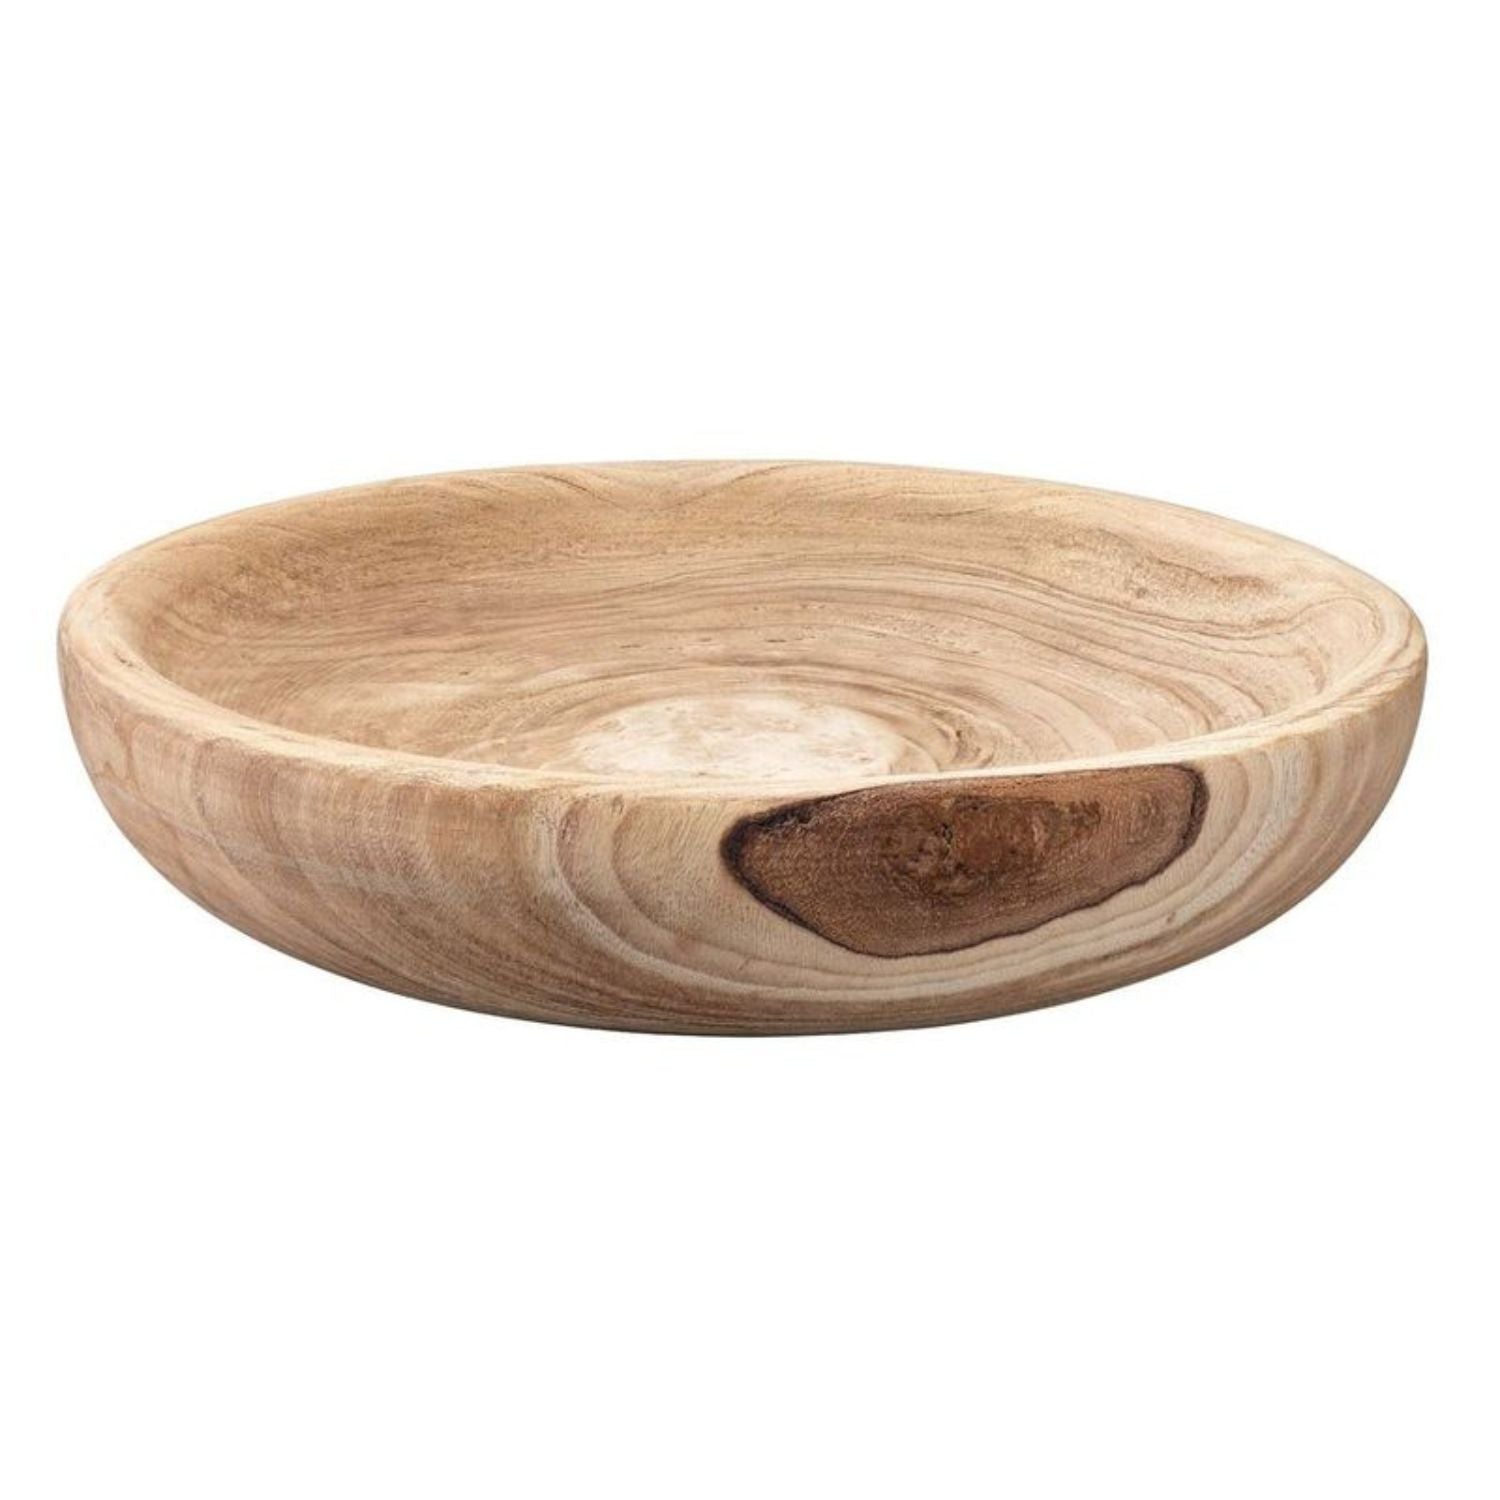 Laurel Wooden Decorative Bowl, Large